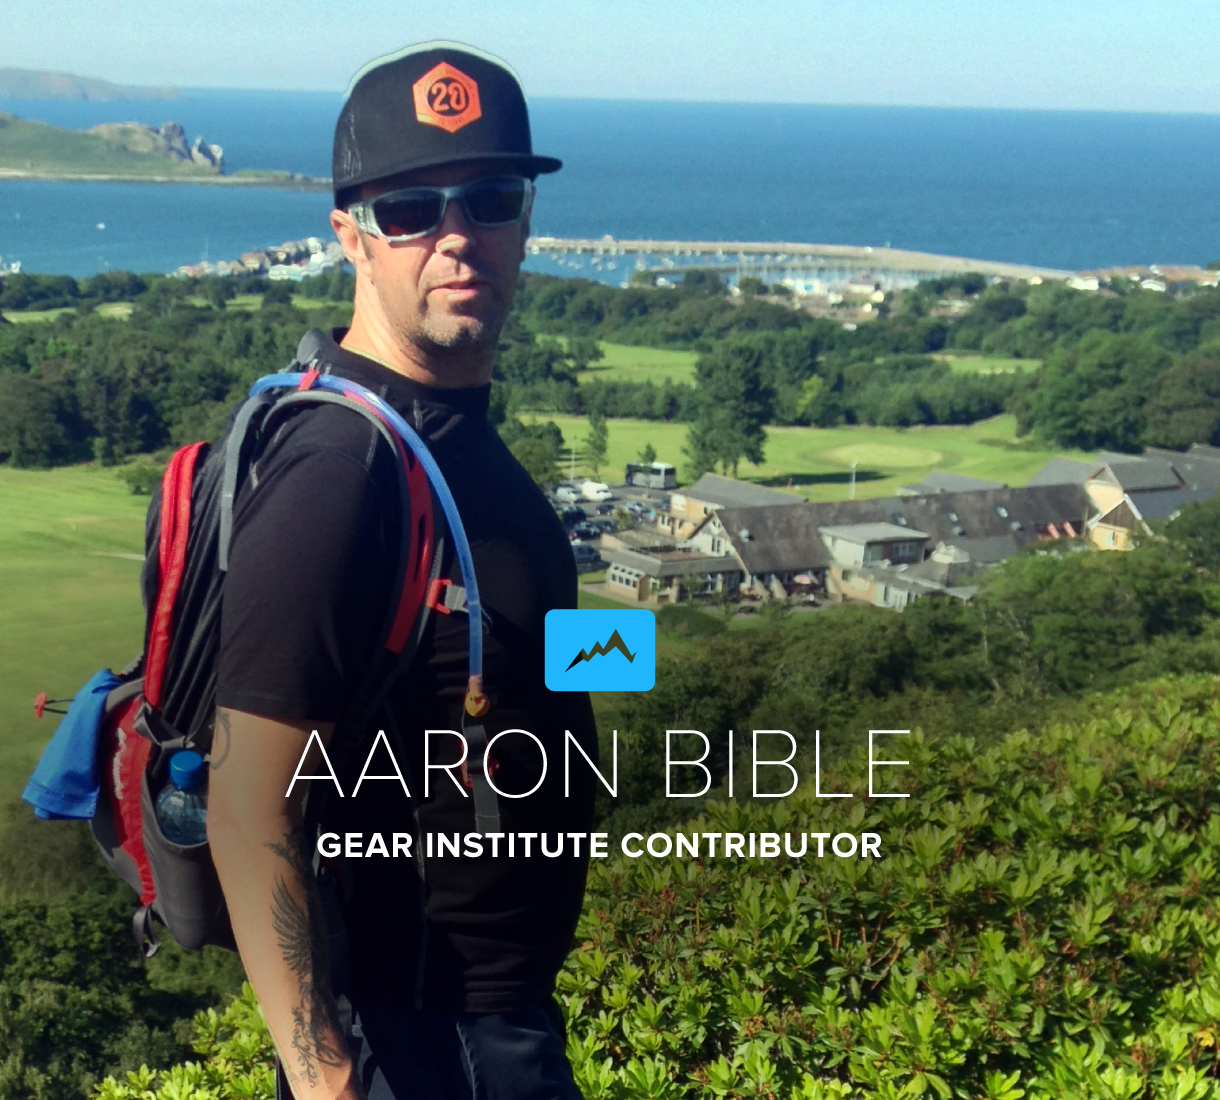 Aaron Bible